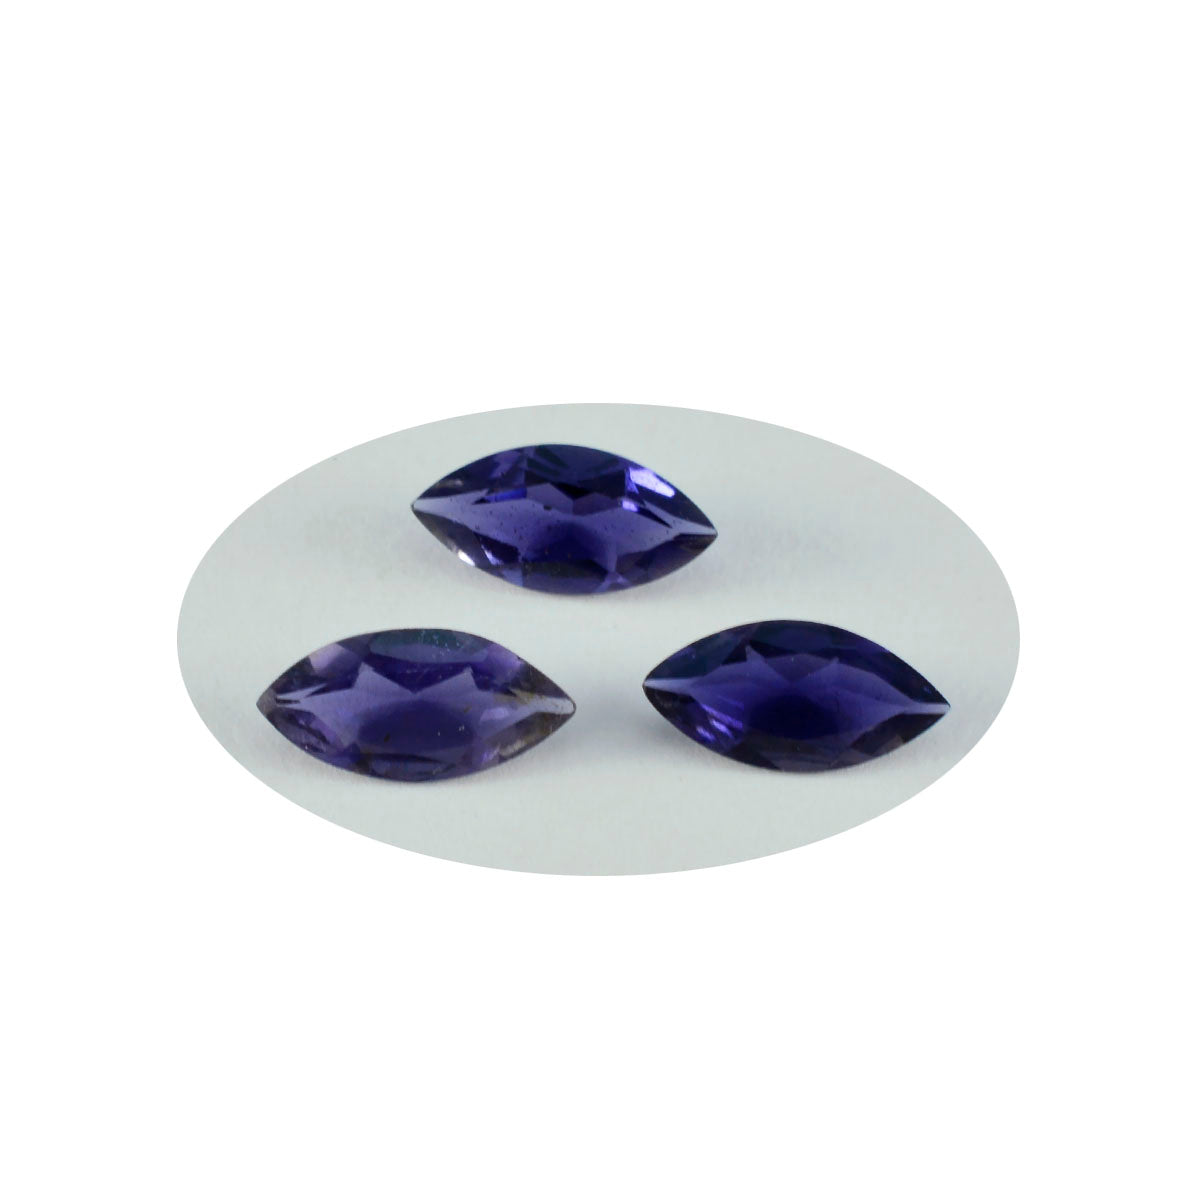 Riyogems 1 pièce d'iolite bleue à facettes 9x18mm en forme de marquise, pierres précieuses en vrac de qualité douce